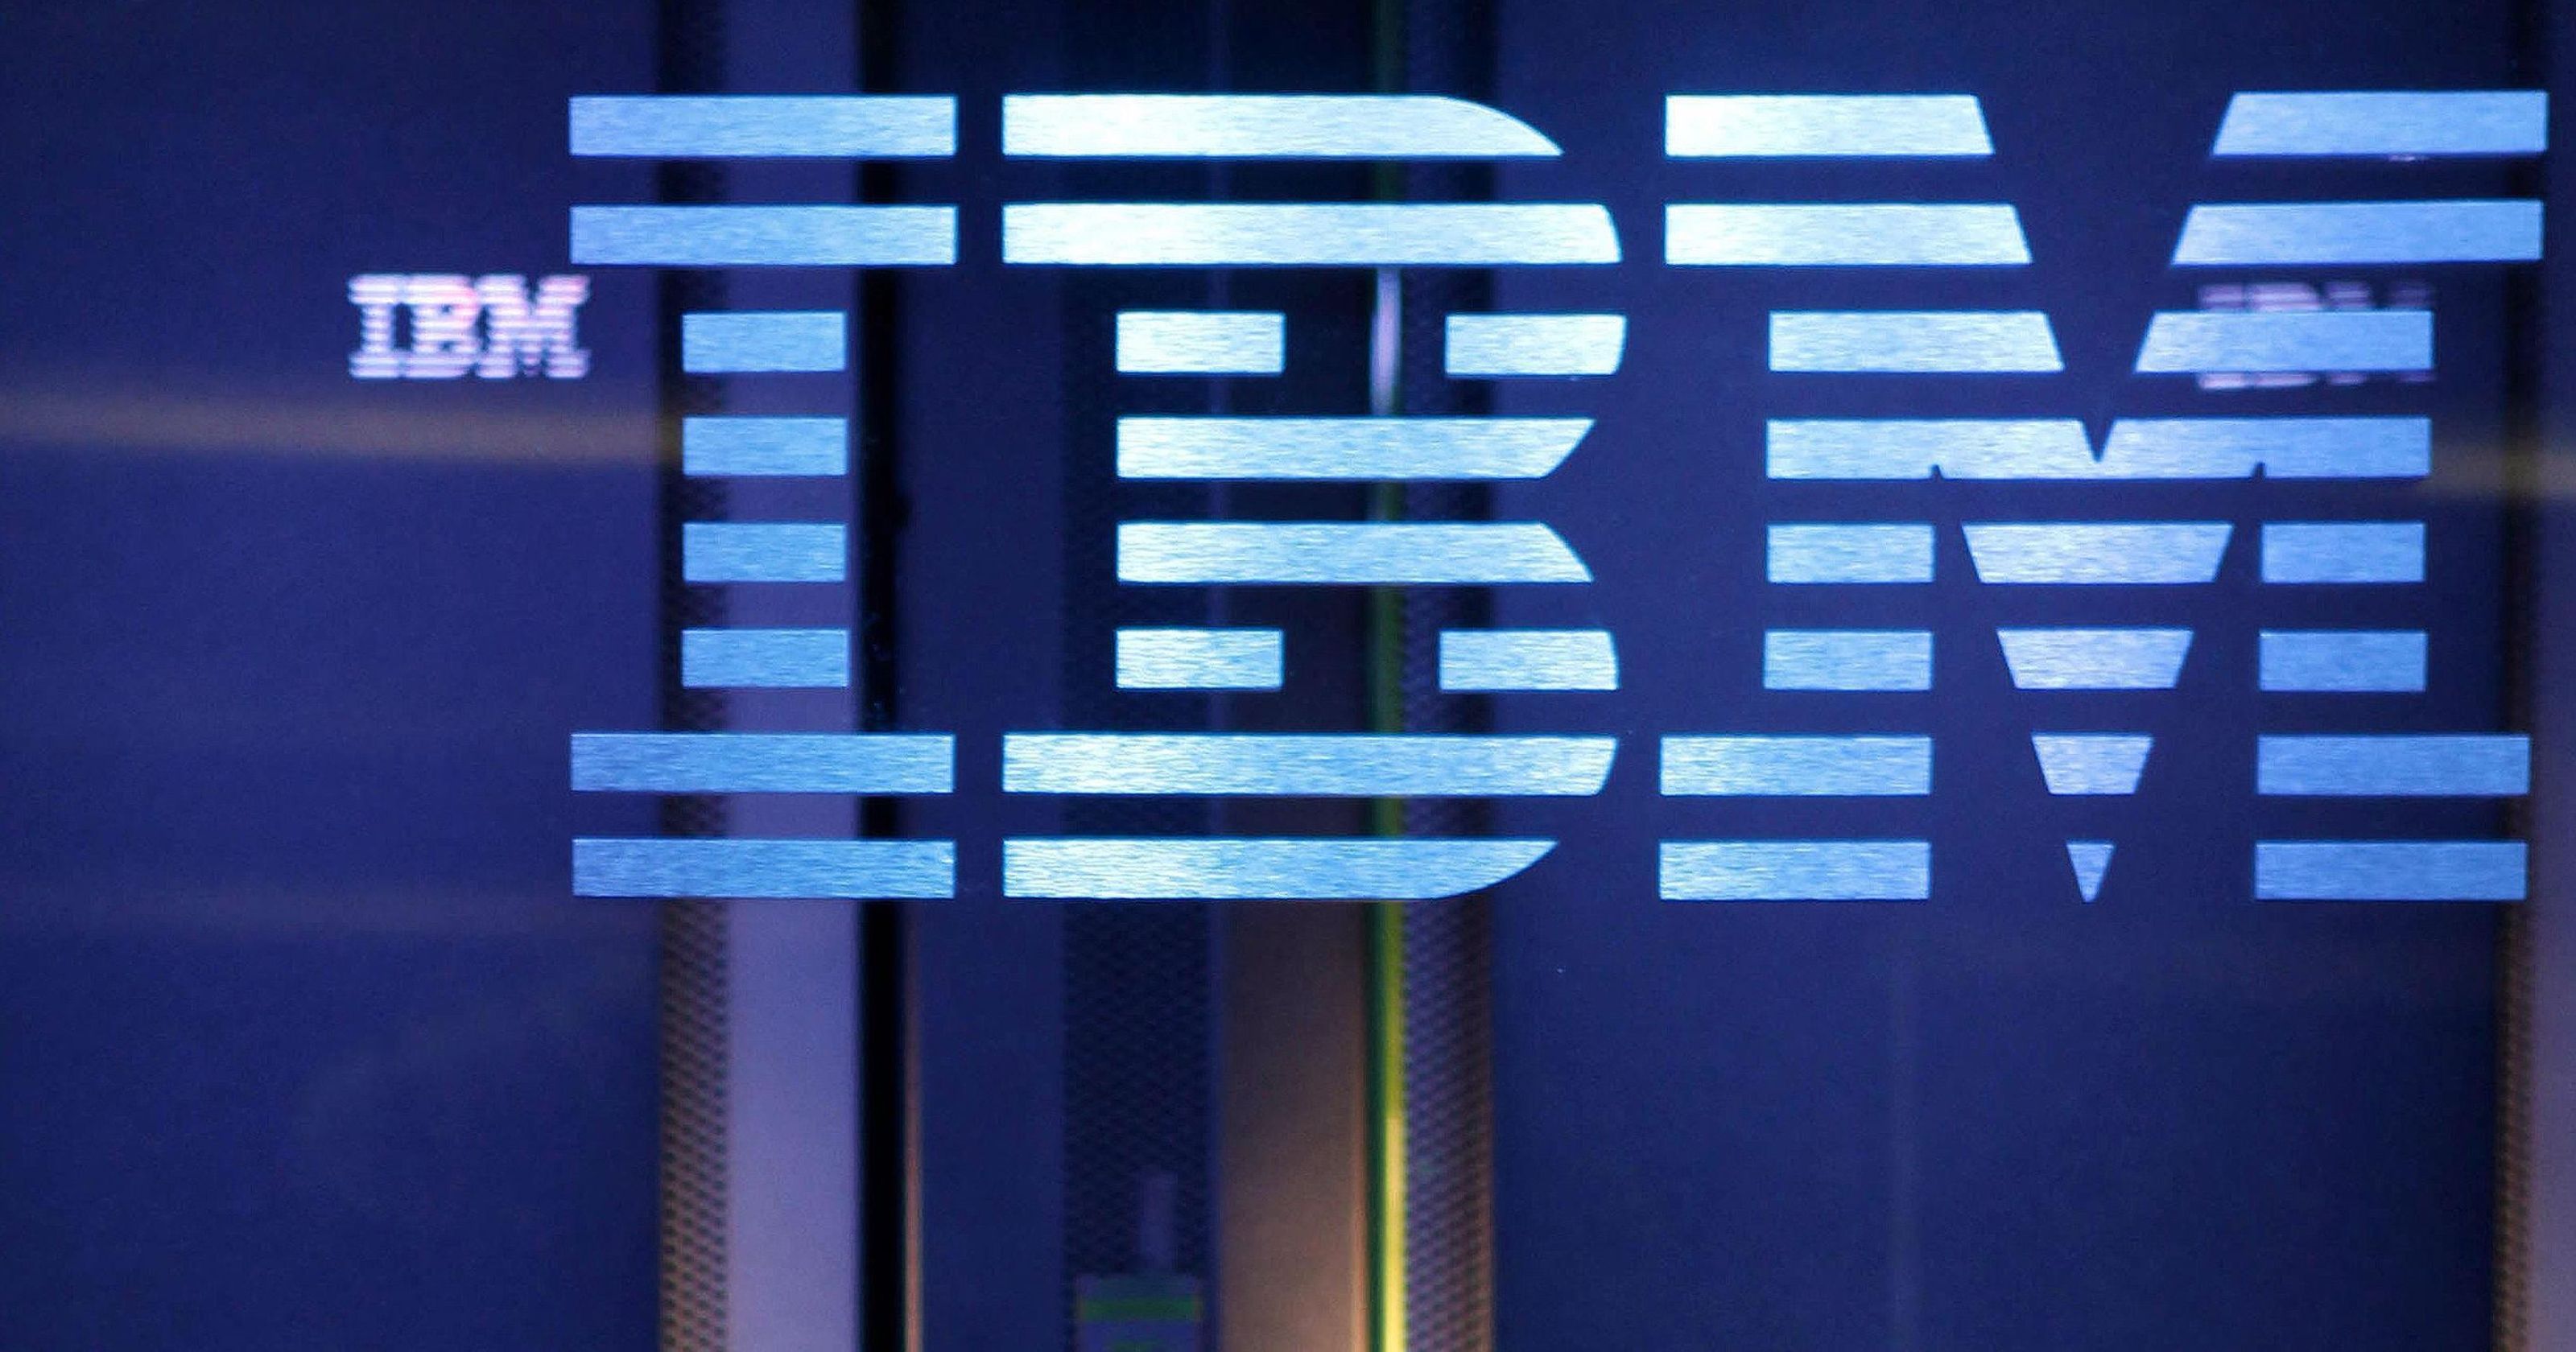 سهم شركة IBM للكمبيوتر يحقق أعلى مكاسب له منذ 10 سنوات بعد النتائج الإيجابية المفاجئة   صحيفة الاقتصادية